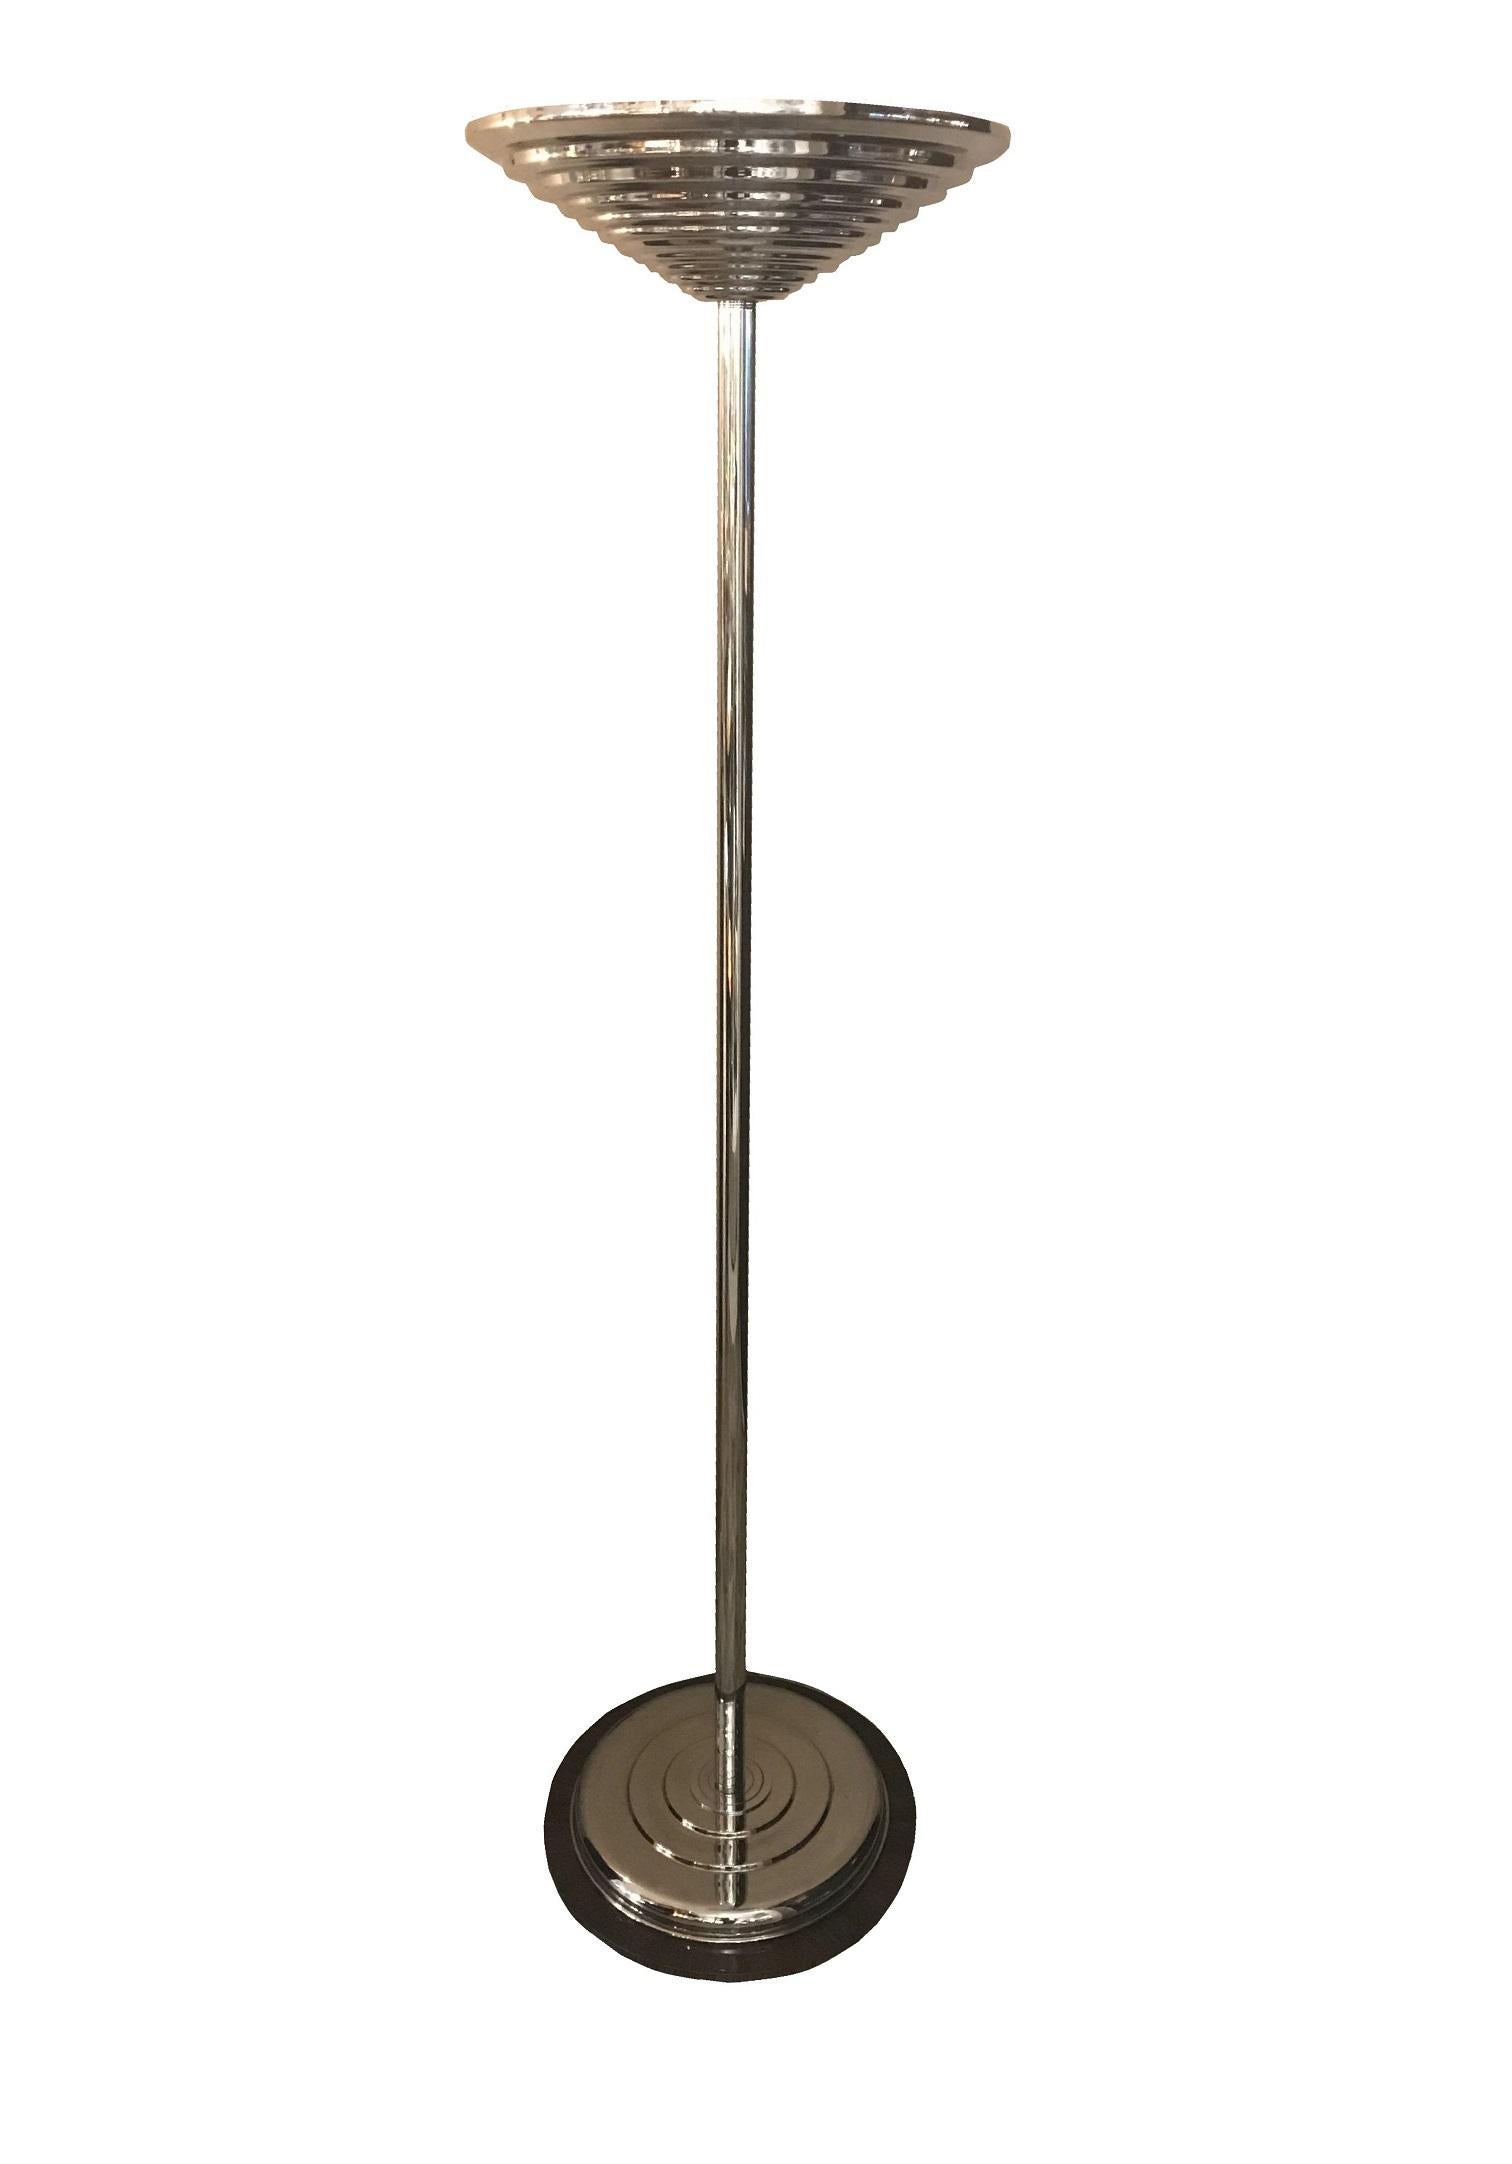 2 lampadaires Art Déco

Matériaux : bois, verre, chrome
France
1930
Vous voulez vivre dans l'âge d'or, ce sont les lampadaires dont votre projet a besoin.
Nous sommes spécialisés dans la vente de styles Art Déco et Art Nouveau depuis 1982.
En